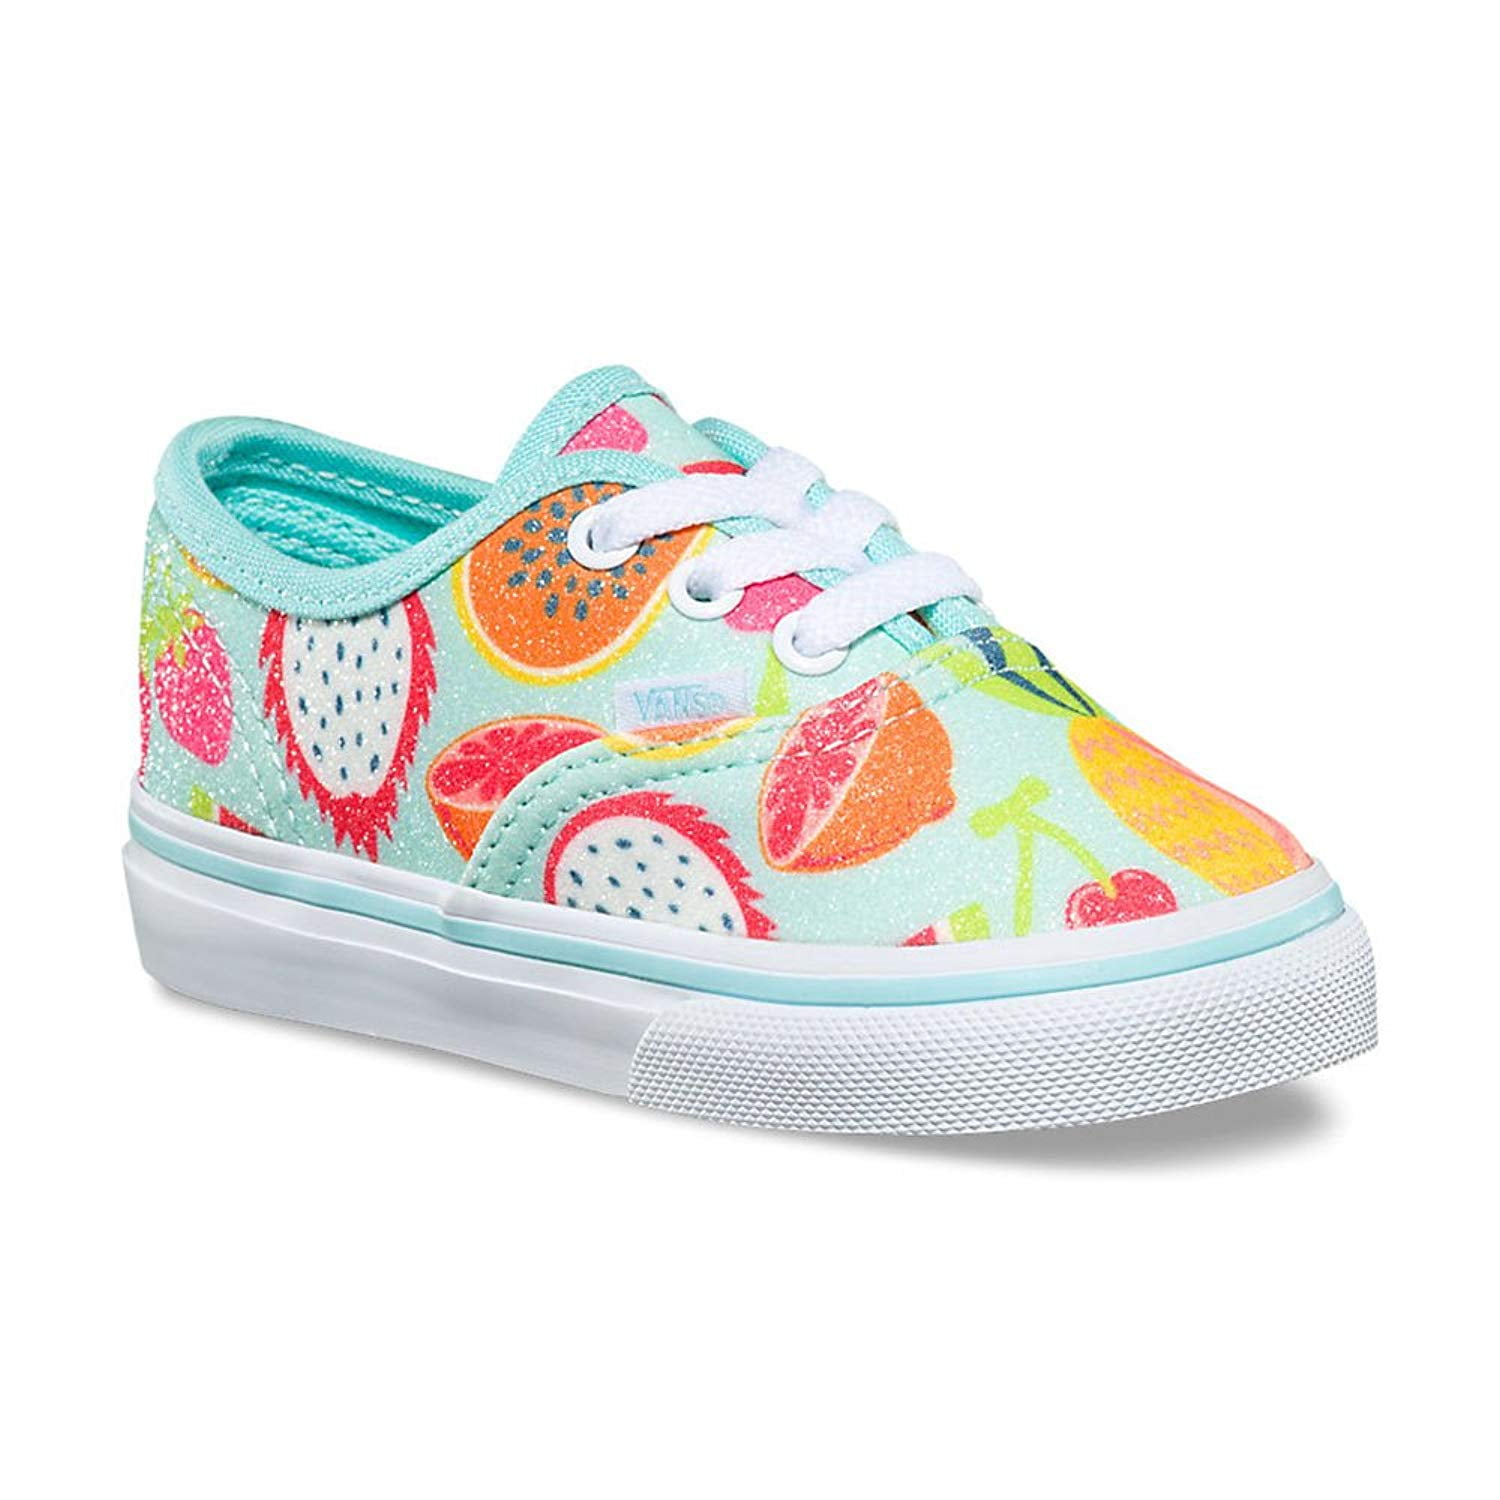 Besmettelijke ziekte Eenheid Wens Vans Authentic Glitter Fruits Island Skate Shoes 7.5 Toddler - Walmart.com